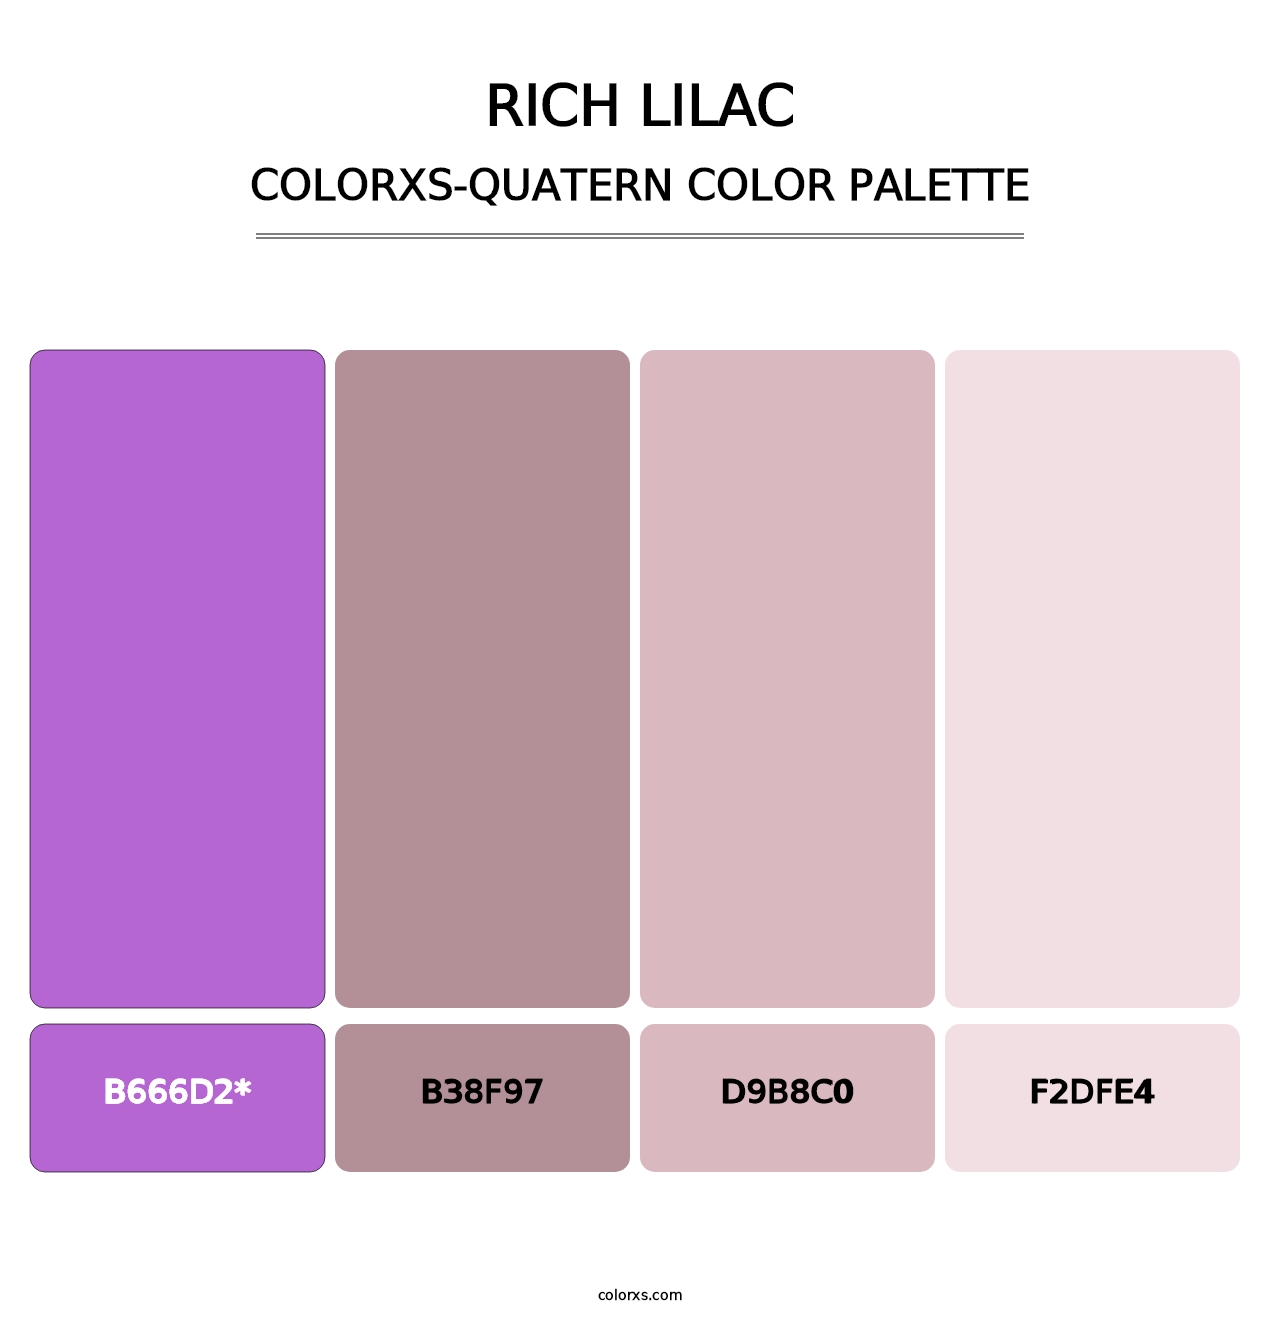 Rich Lilac - Colorxs Quatern Palette